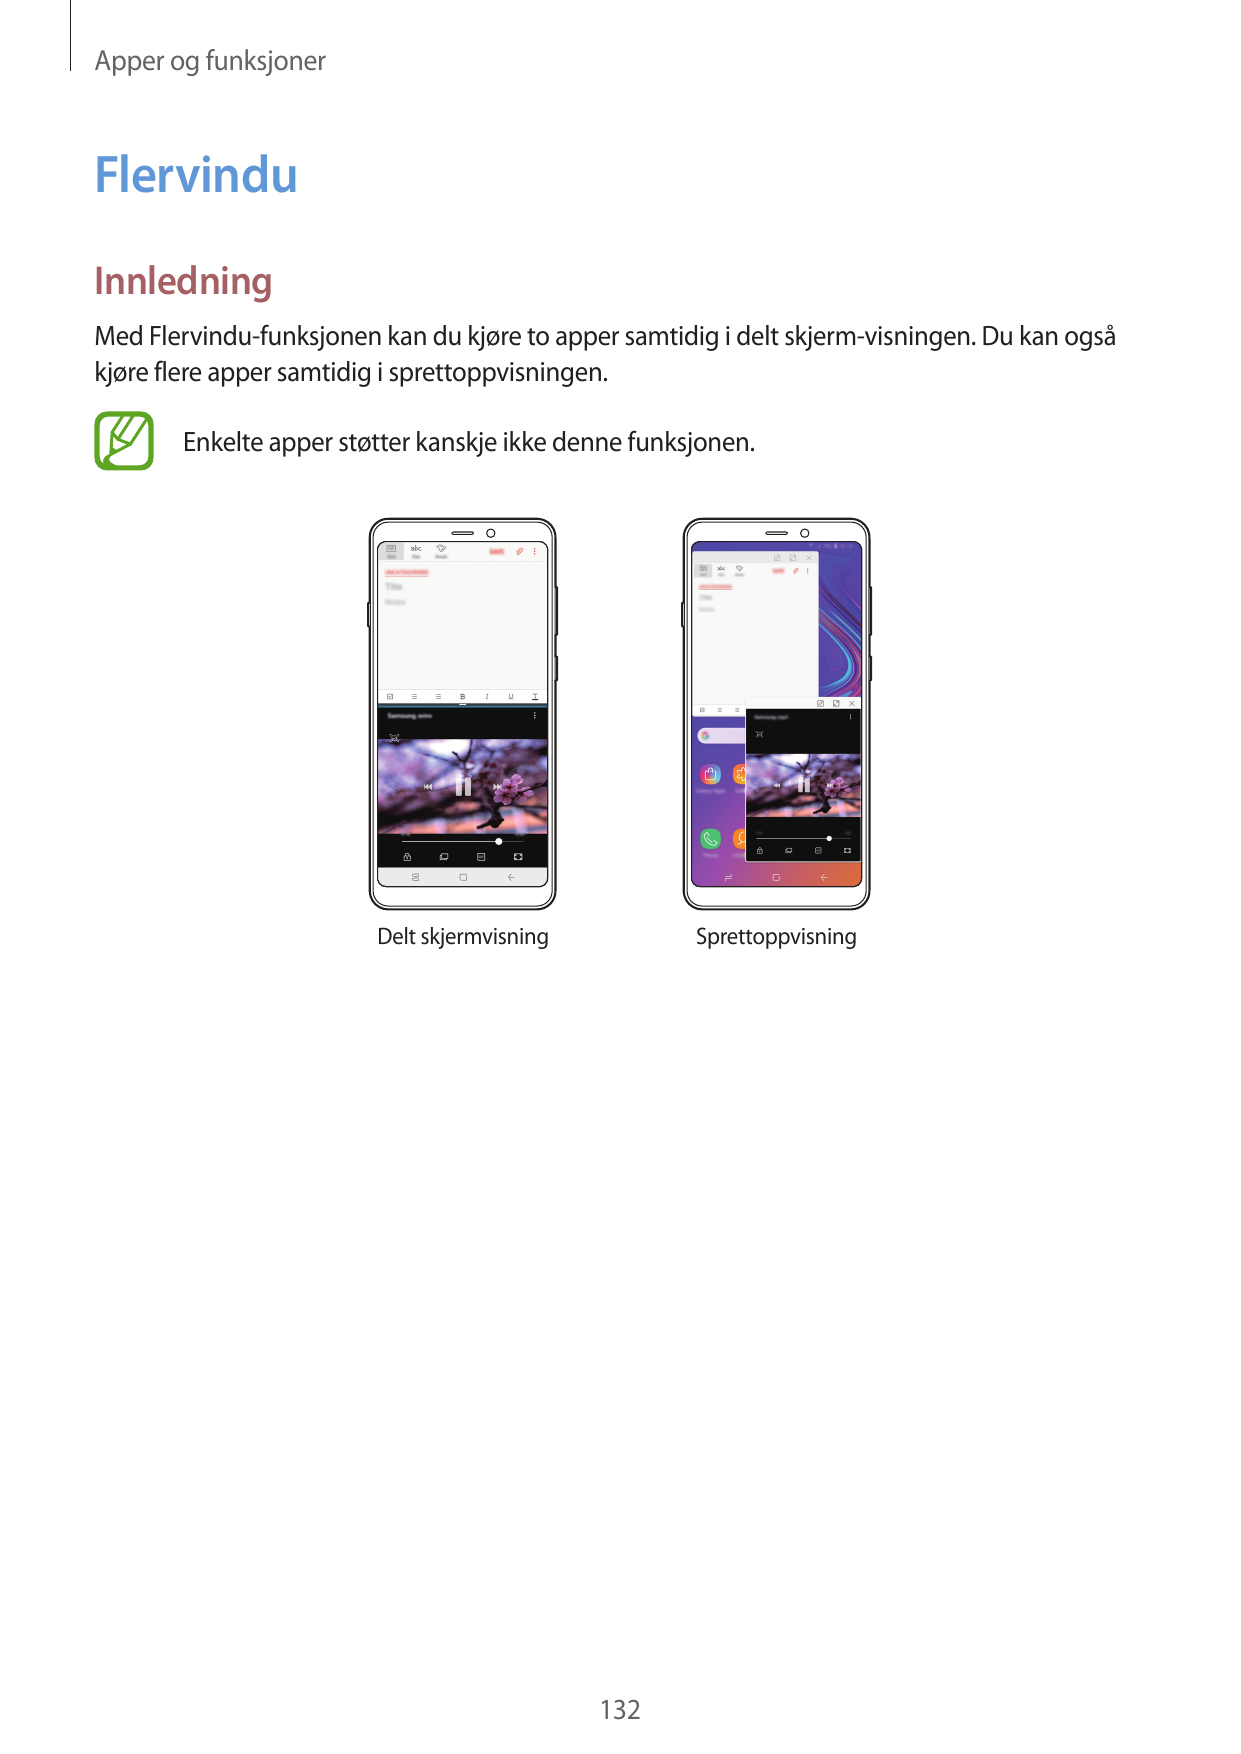 Apper og funksjonerFlervinduInnledningMed Flervindu-funksjonen kan du kjøre to apper samtidig i delt skjerm-visningen. Du kan og